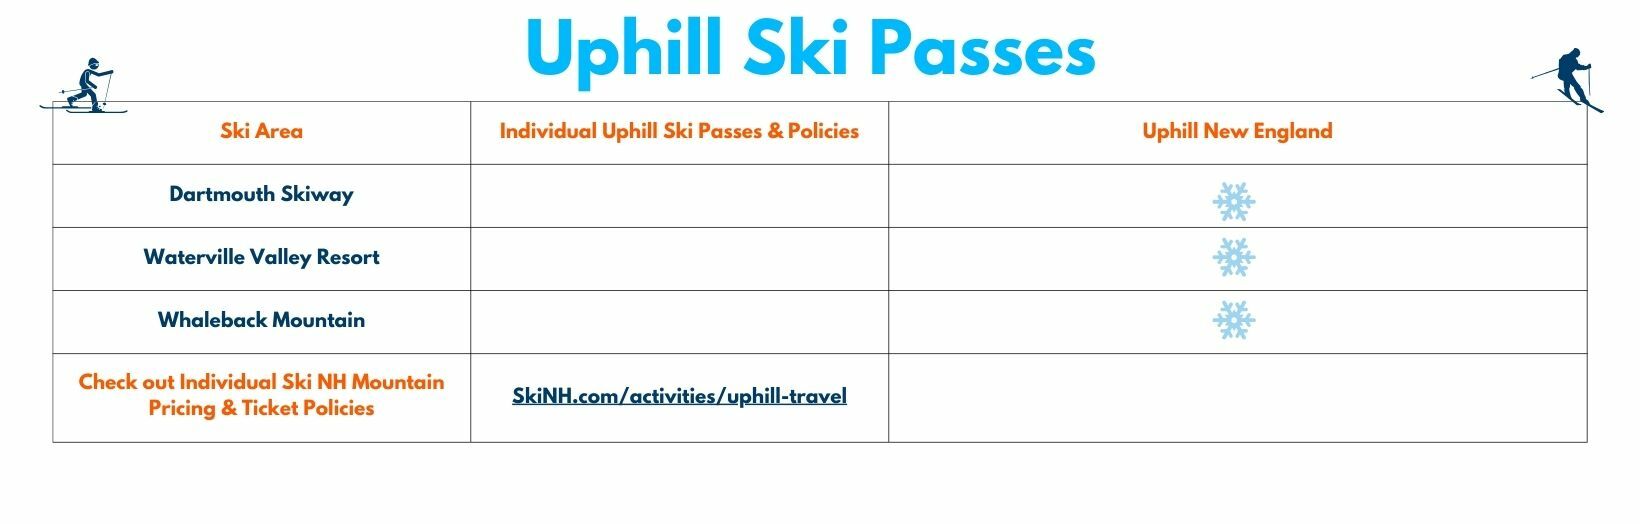 Uphill Ski Passes rev